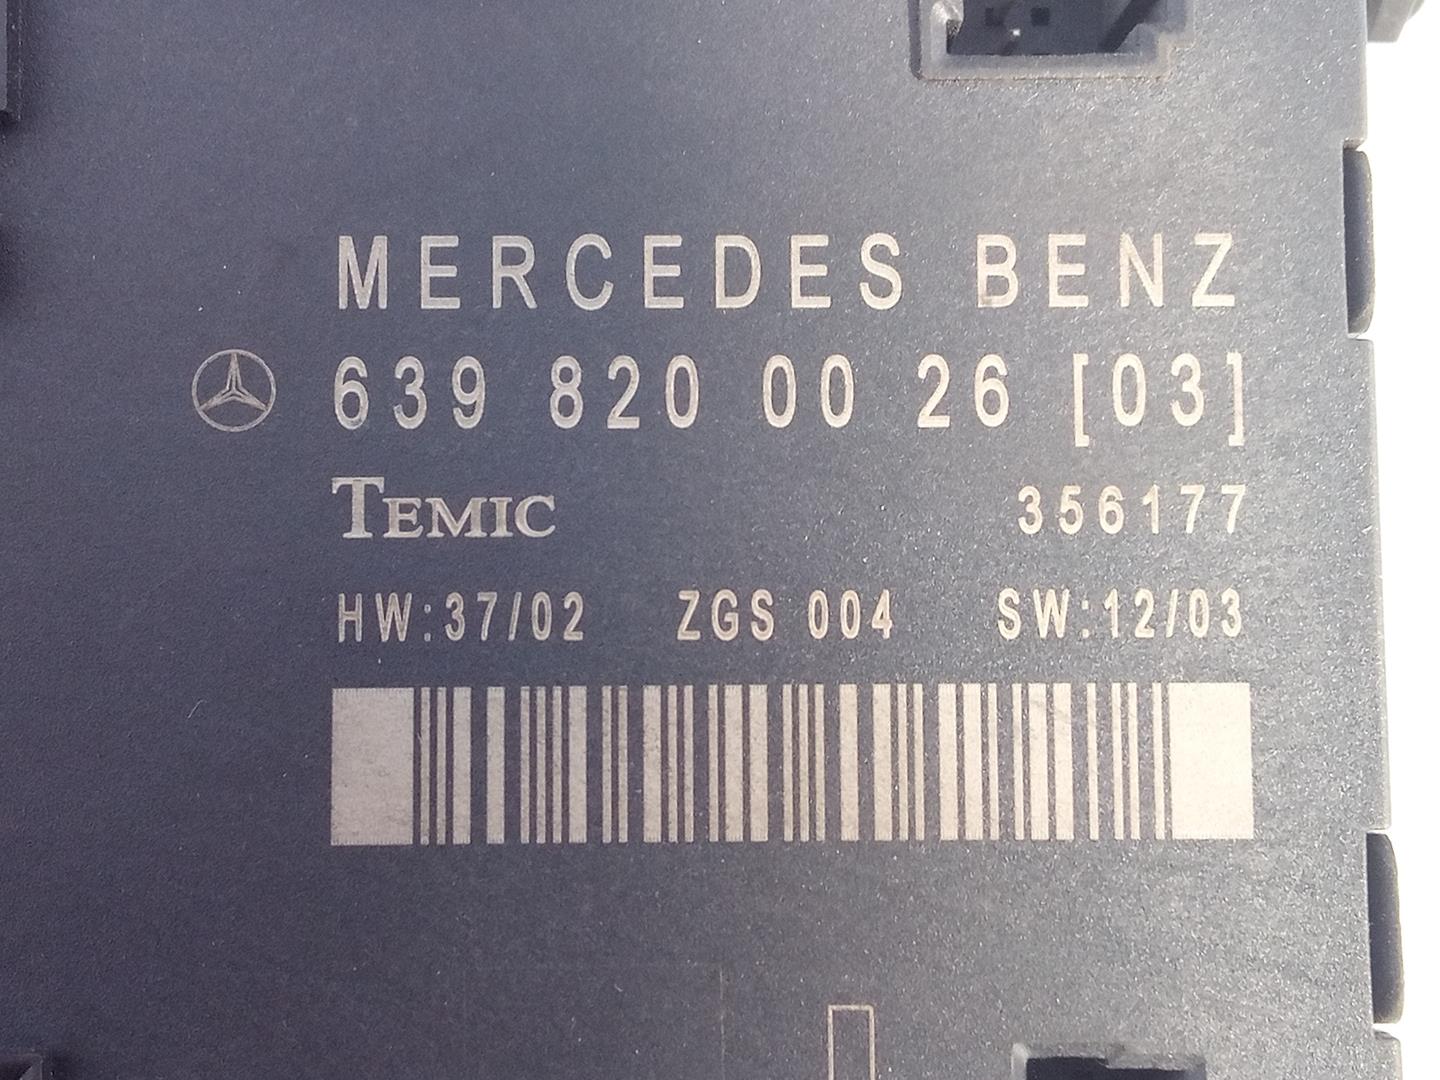 MERCEDES-BENZ Viano W639 (2003-2015) Другие блоки управления 639820002603, 356177, E3-A1-4-1 24085739